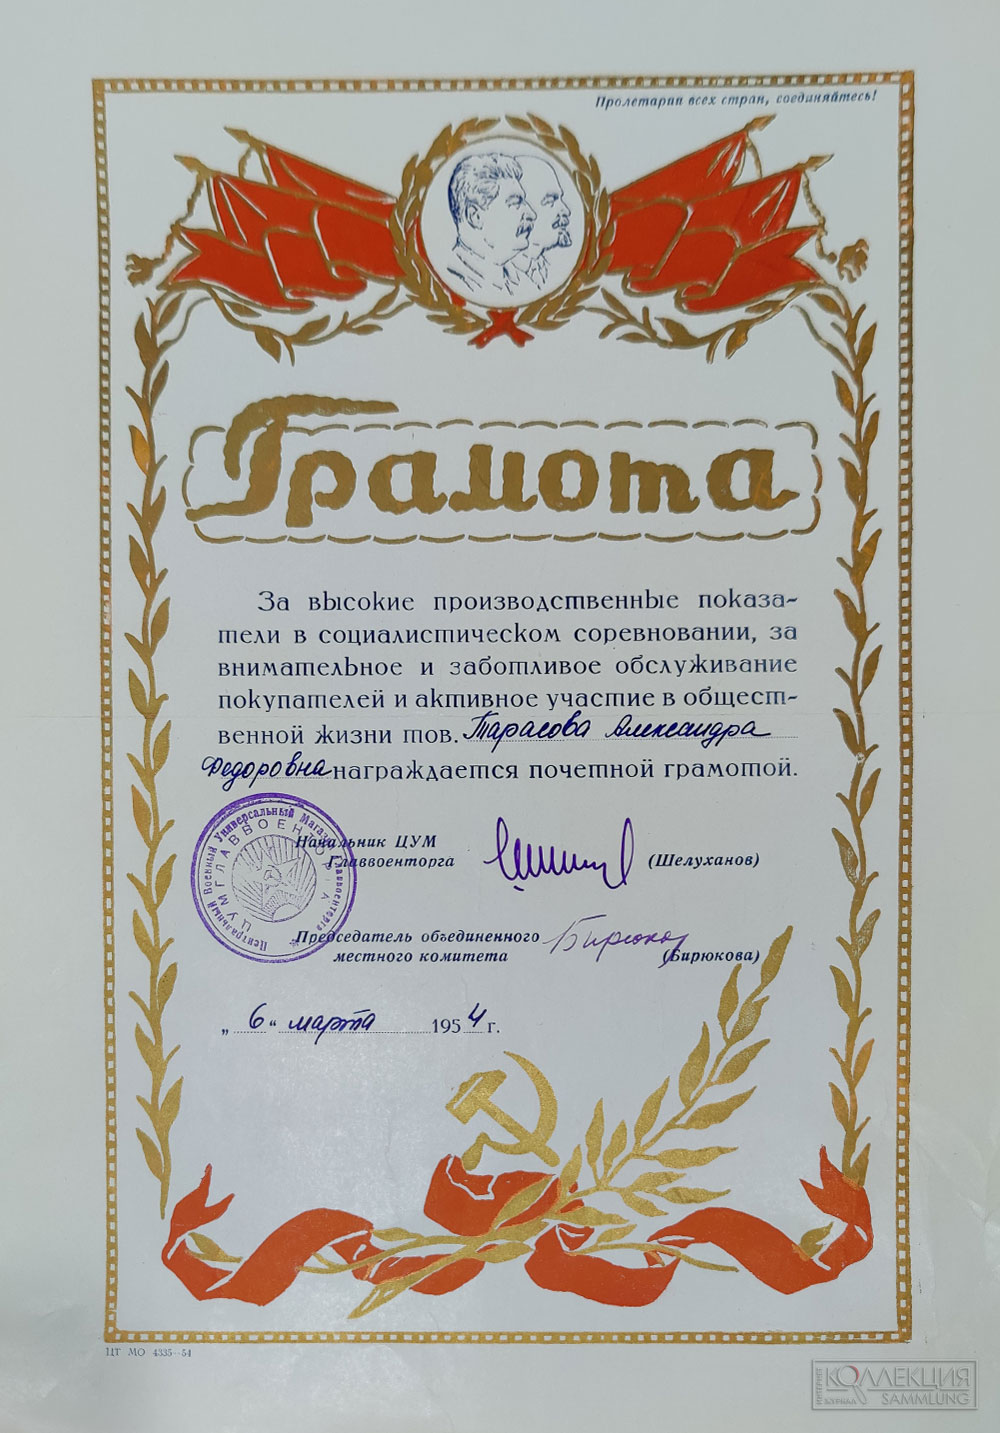 Грамота ЦУМ Главвоенторга, 1954 г.